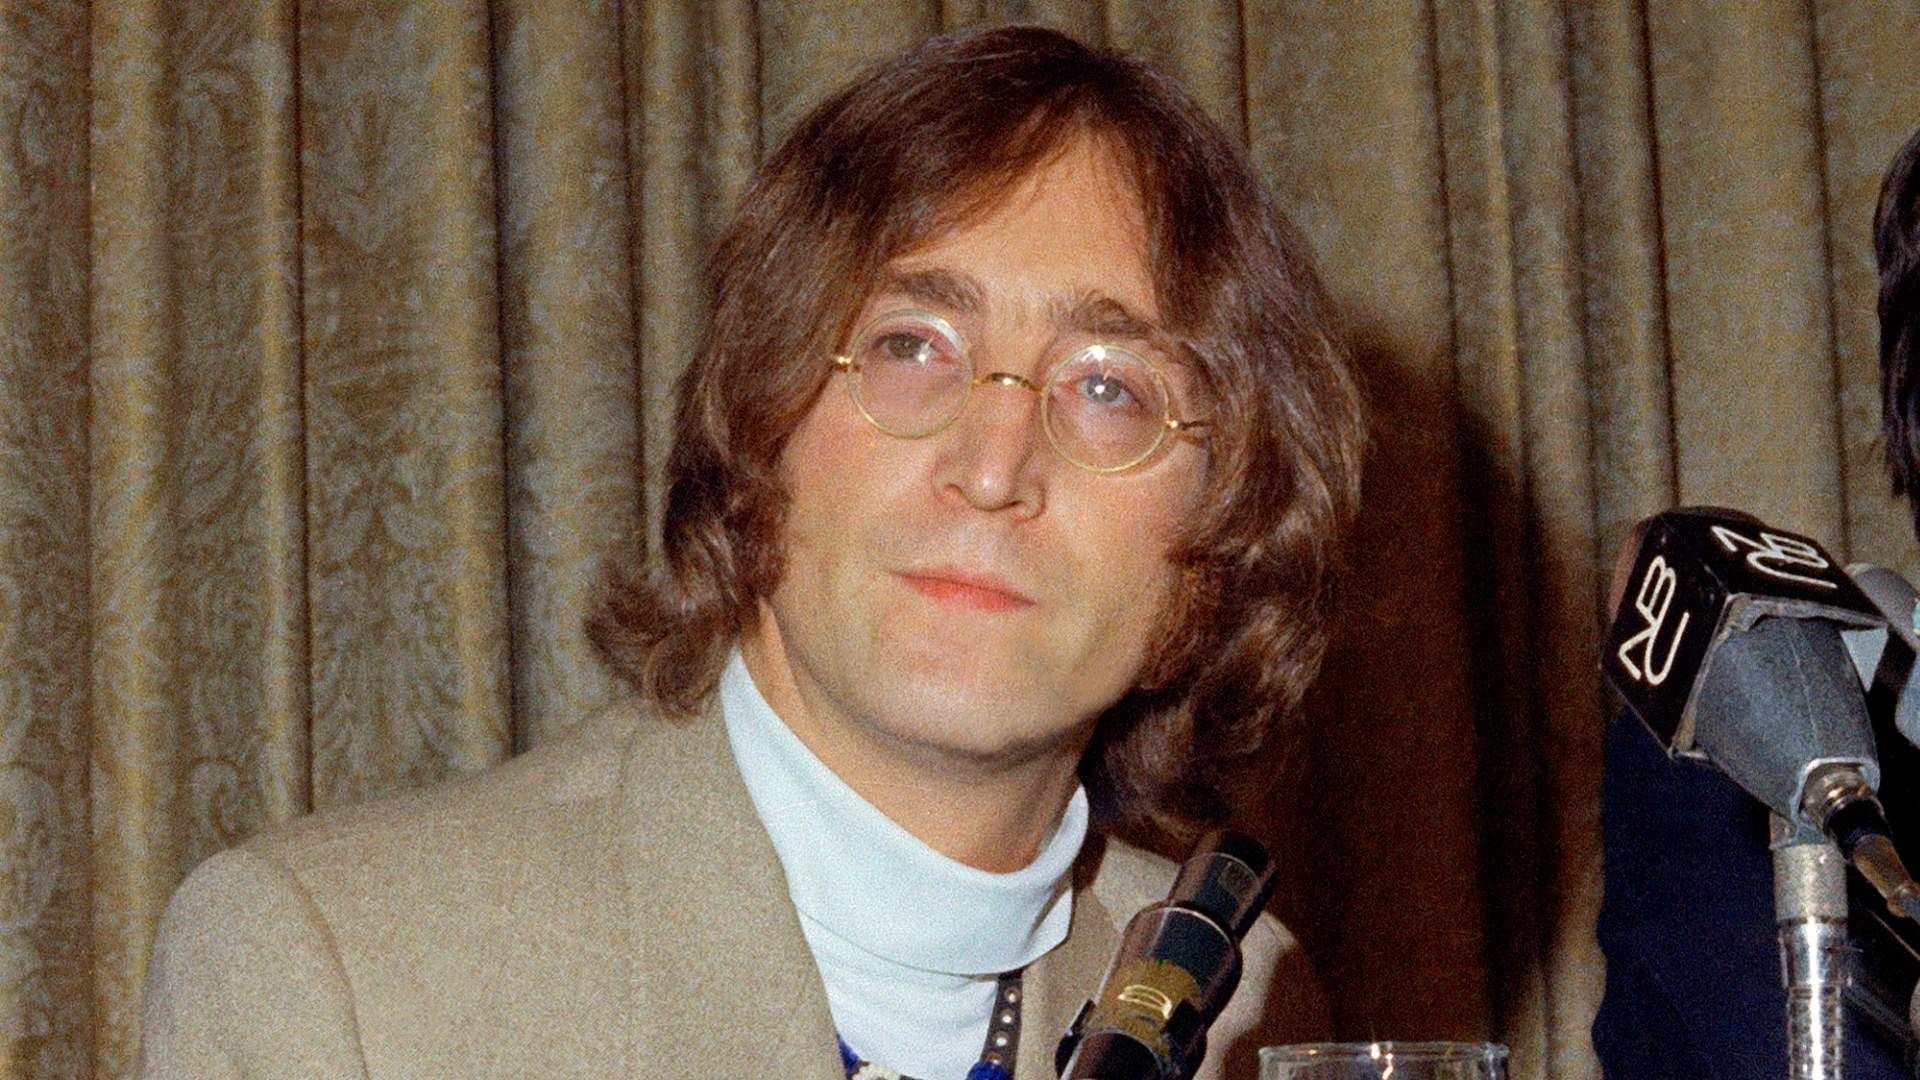 Revelan nuevos detalles sobre la muerte de John Lennon